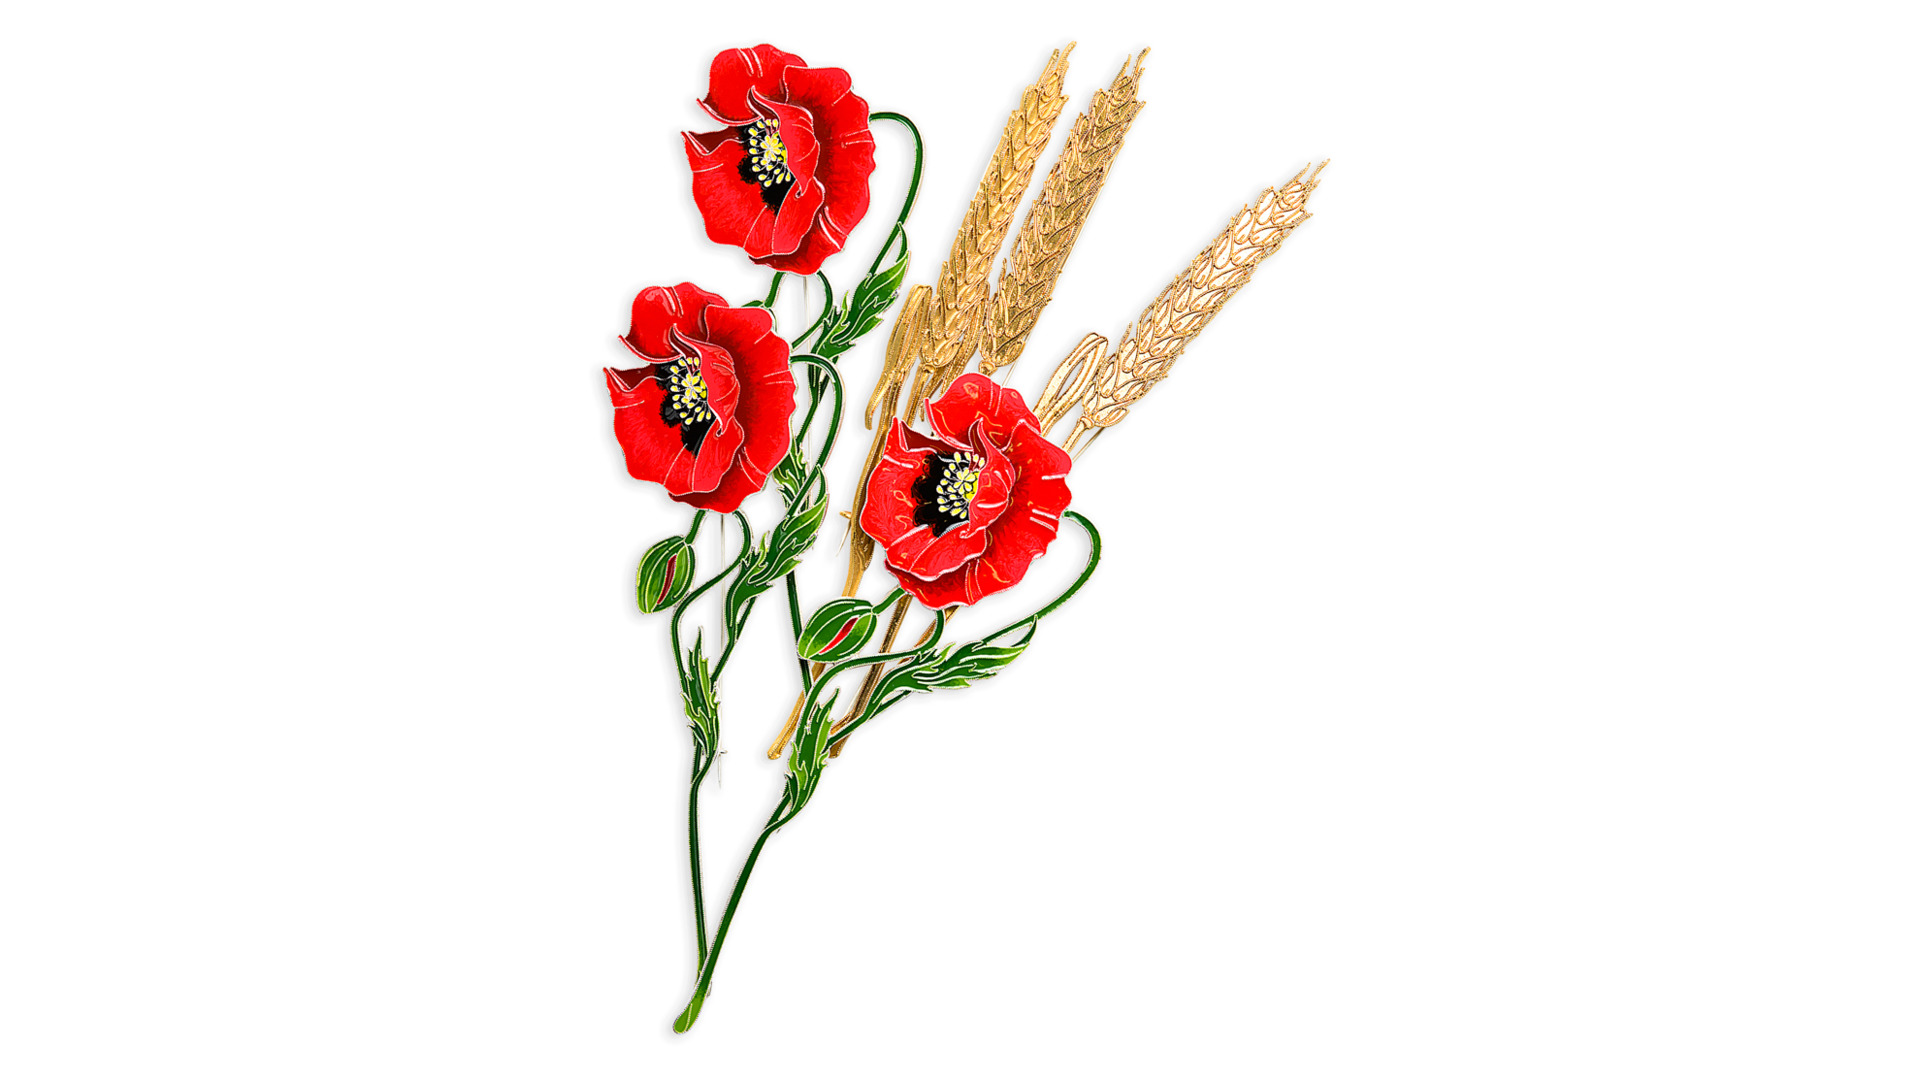 Брошь Русские самоцветы Пшеница 17 г, серебро 925